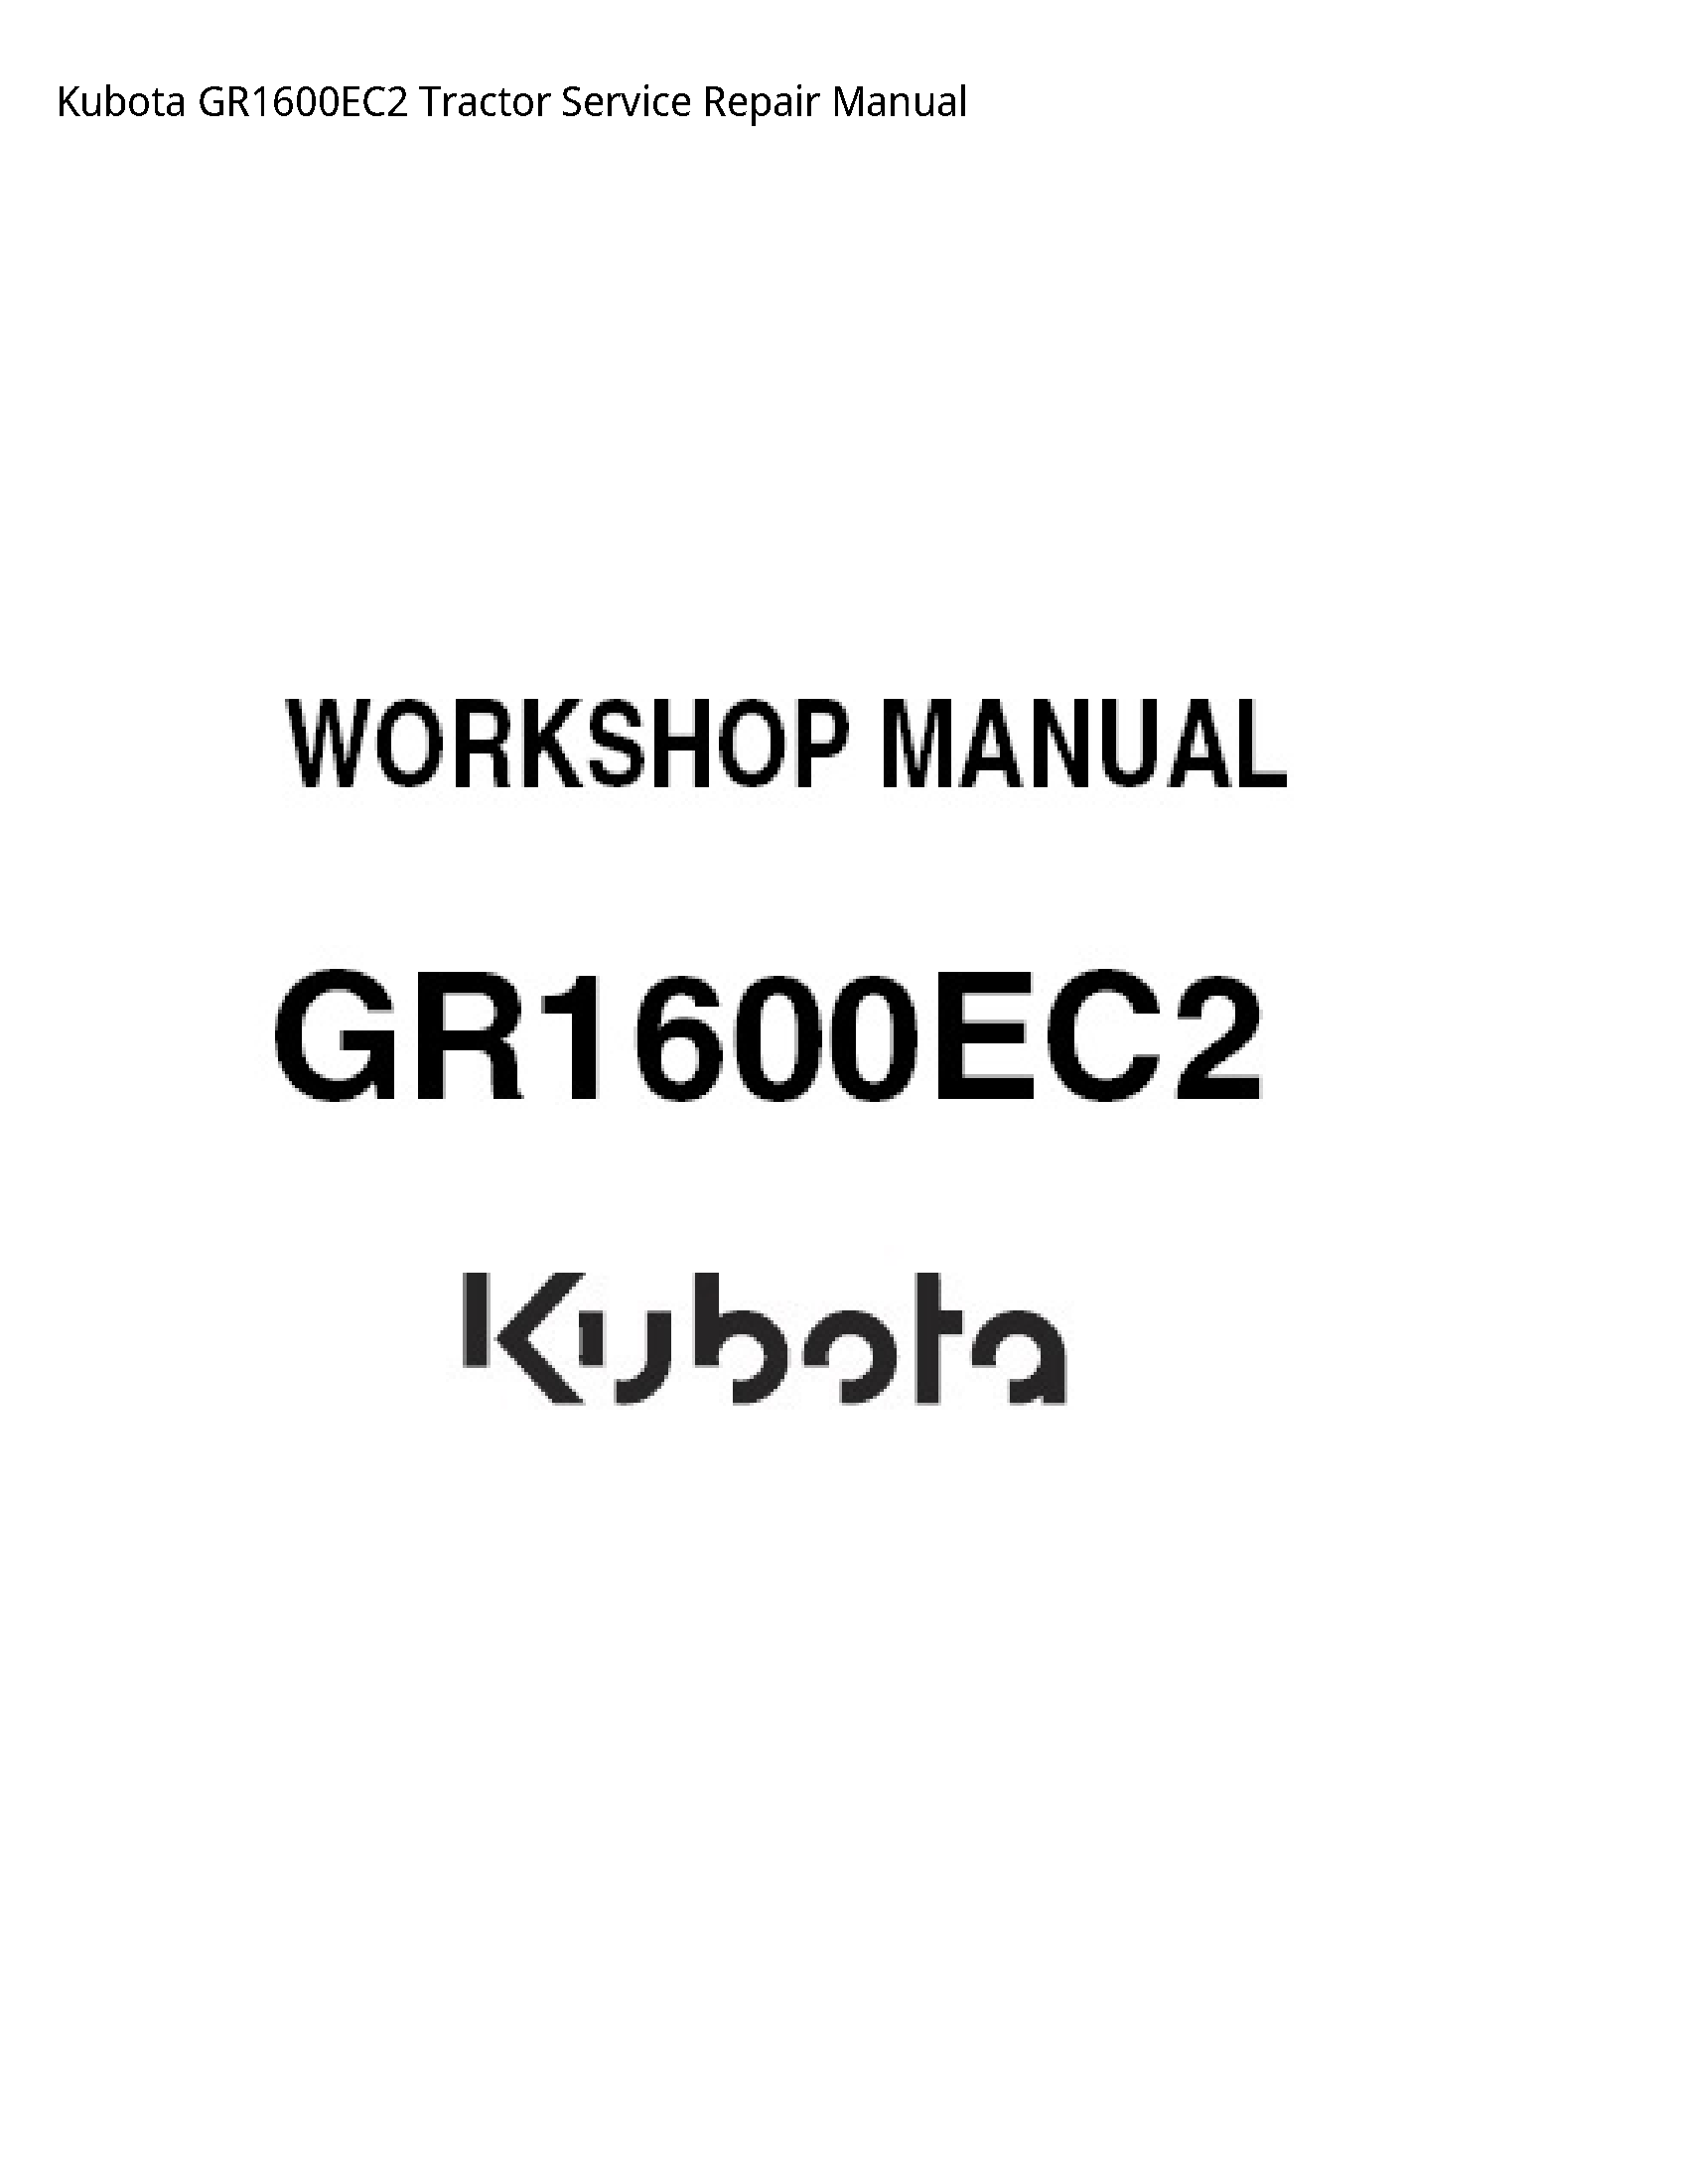 Kubota GR1600EC2 Tractor manual